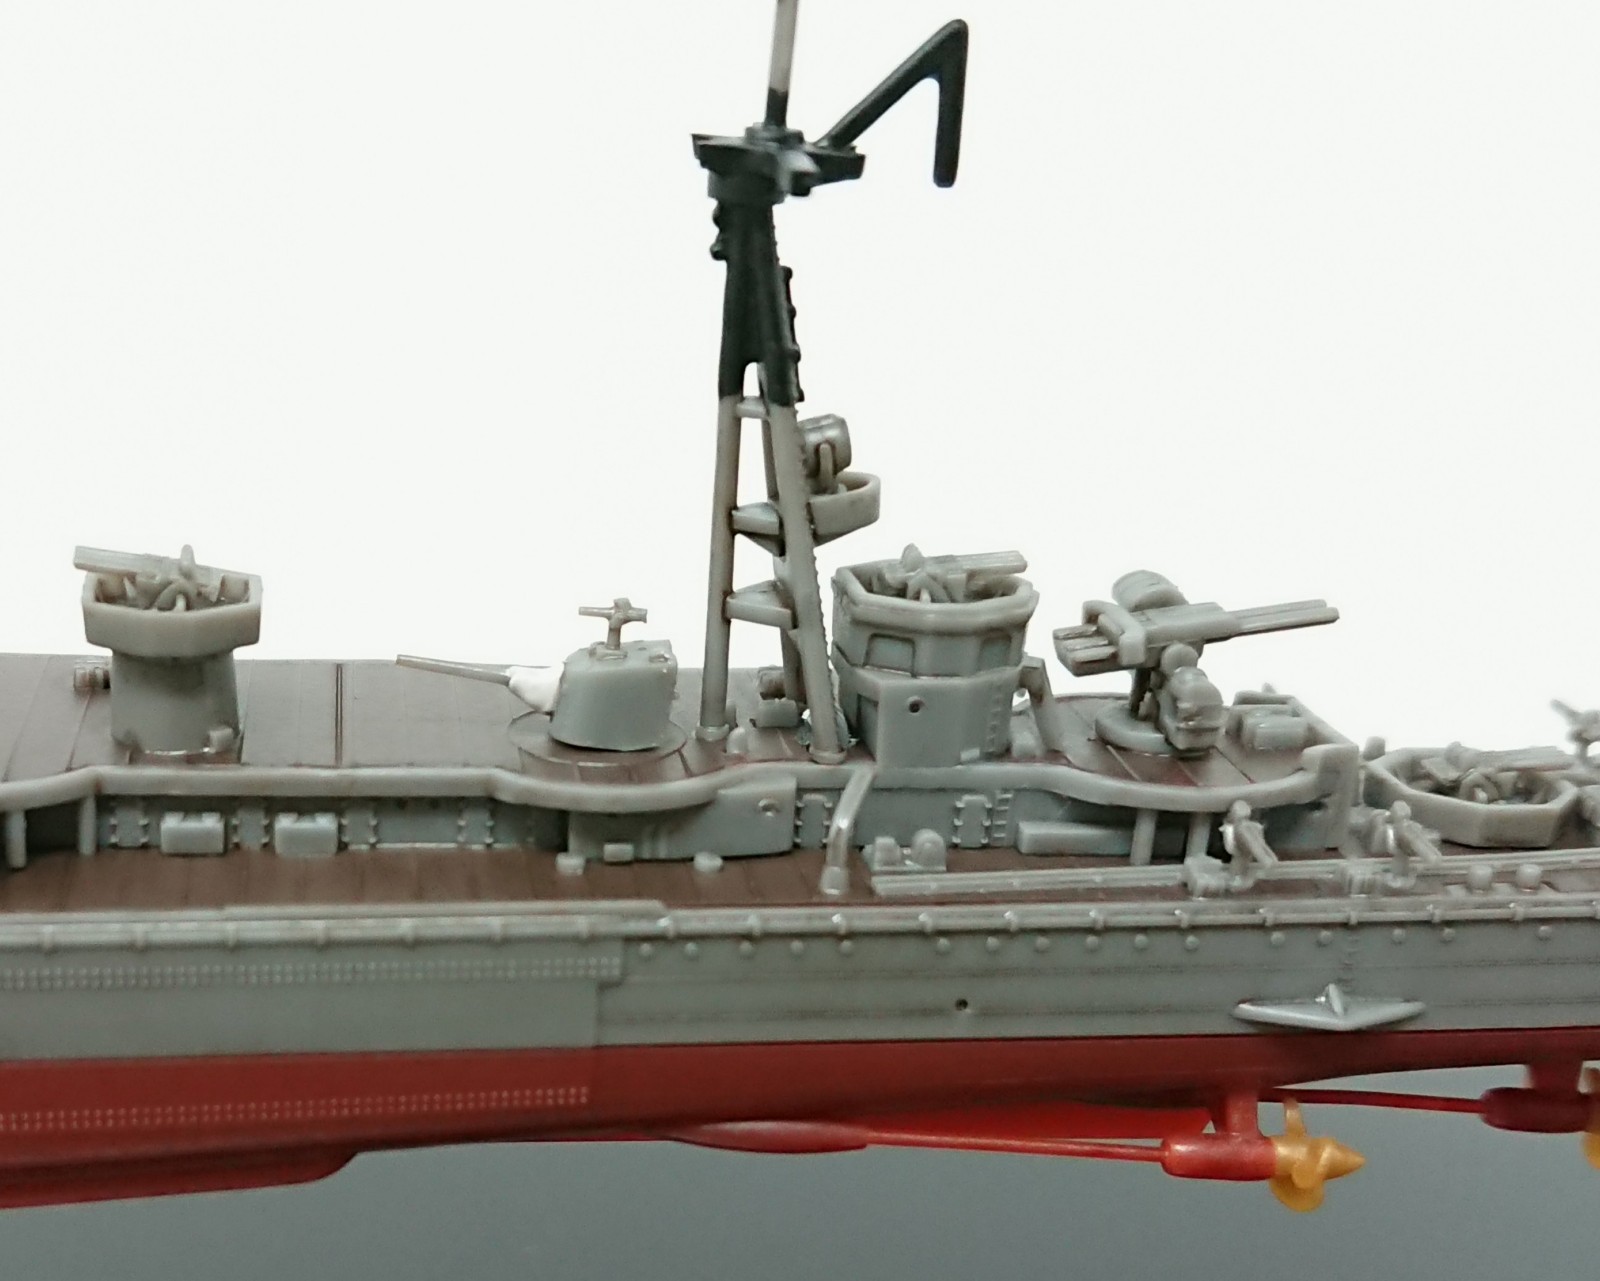 フジミ模型 1/700 艦NEXTシリーズ色分け済みプラモデル「No.18 日本海軍 軽巡洋艦 多摩(たま) 昭和19年(1944)」完成品ギャラリー  | 初心者プラモデル道